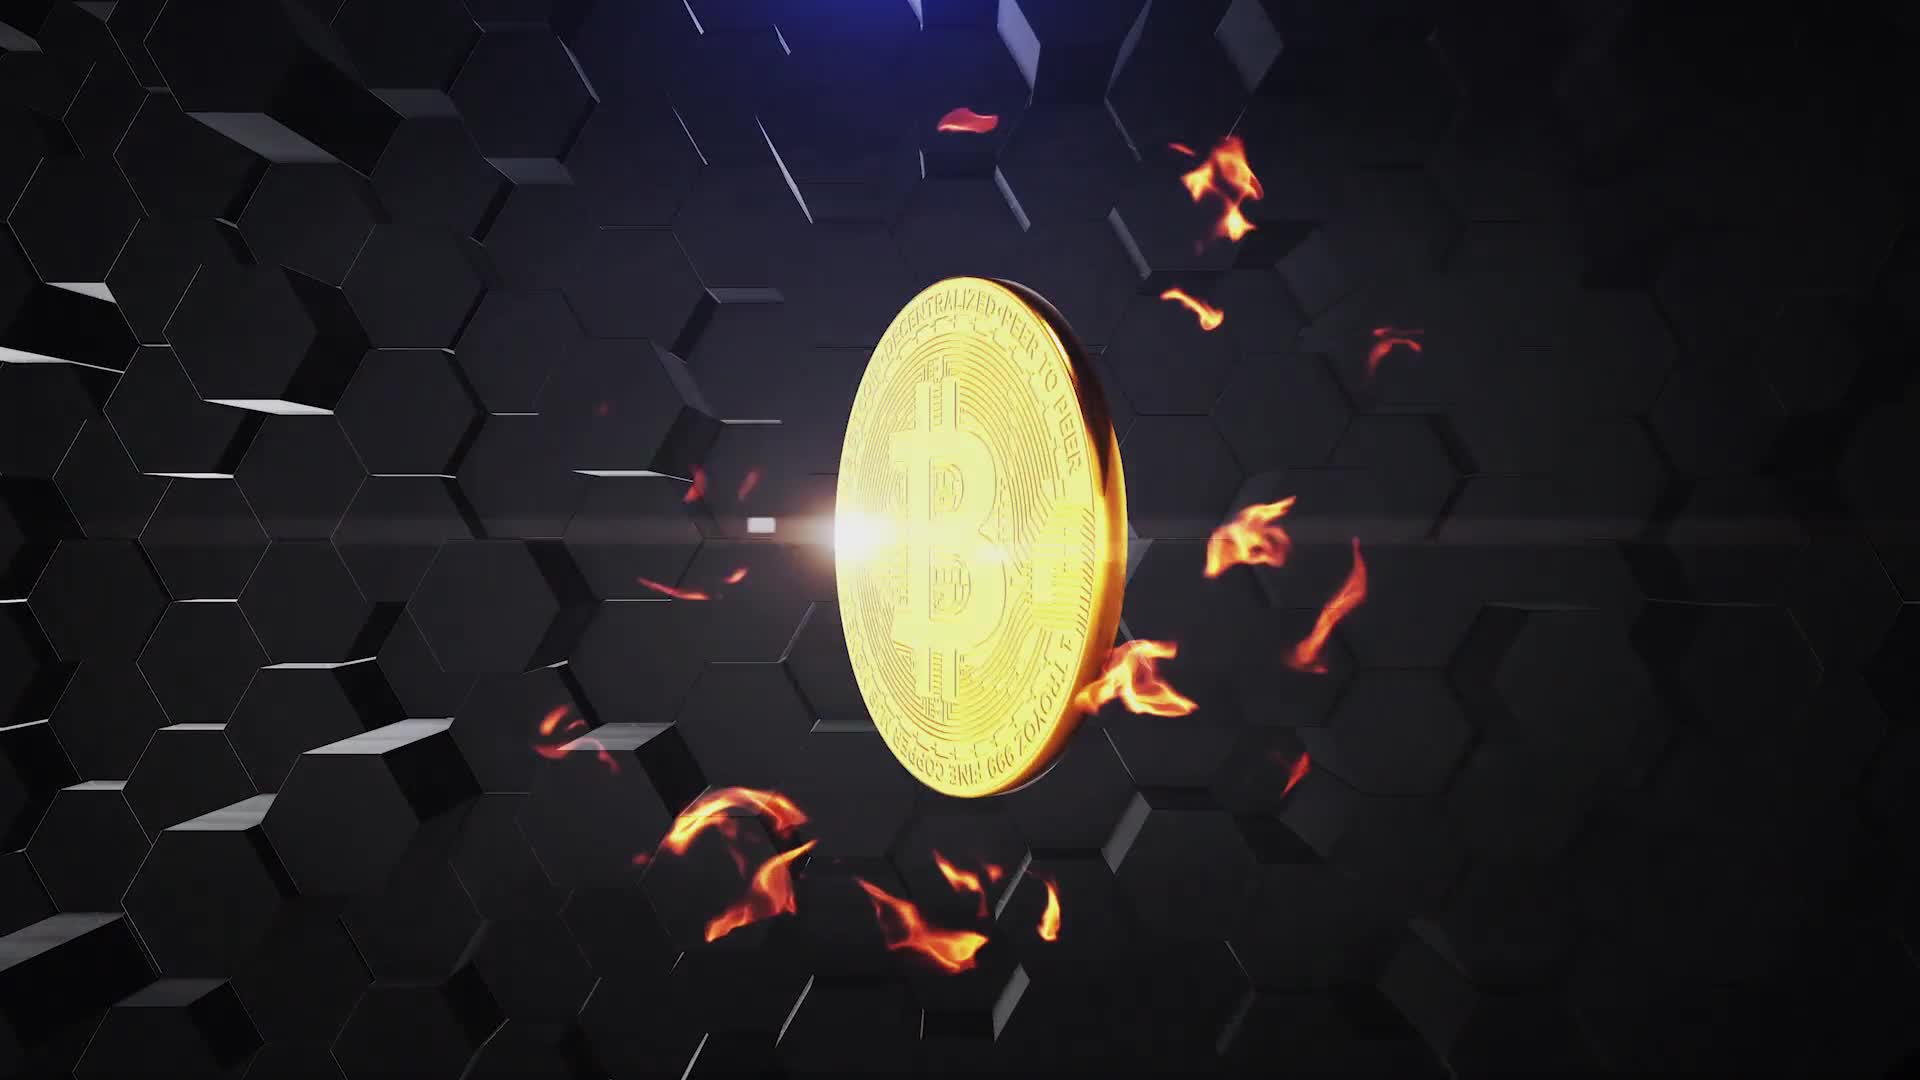  Bitcoin logo reveal 